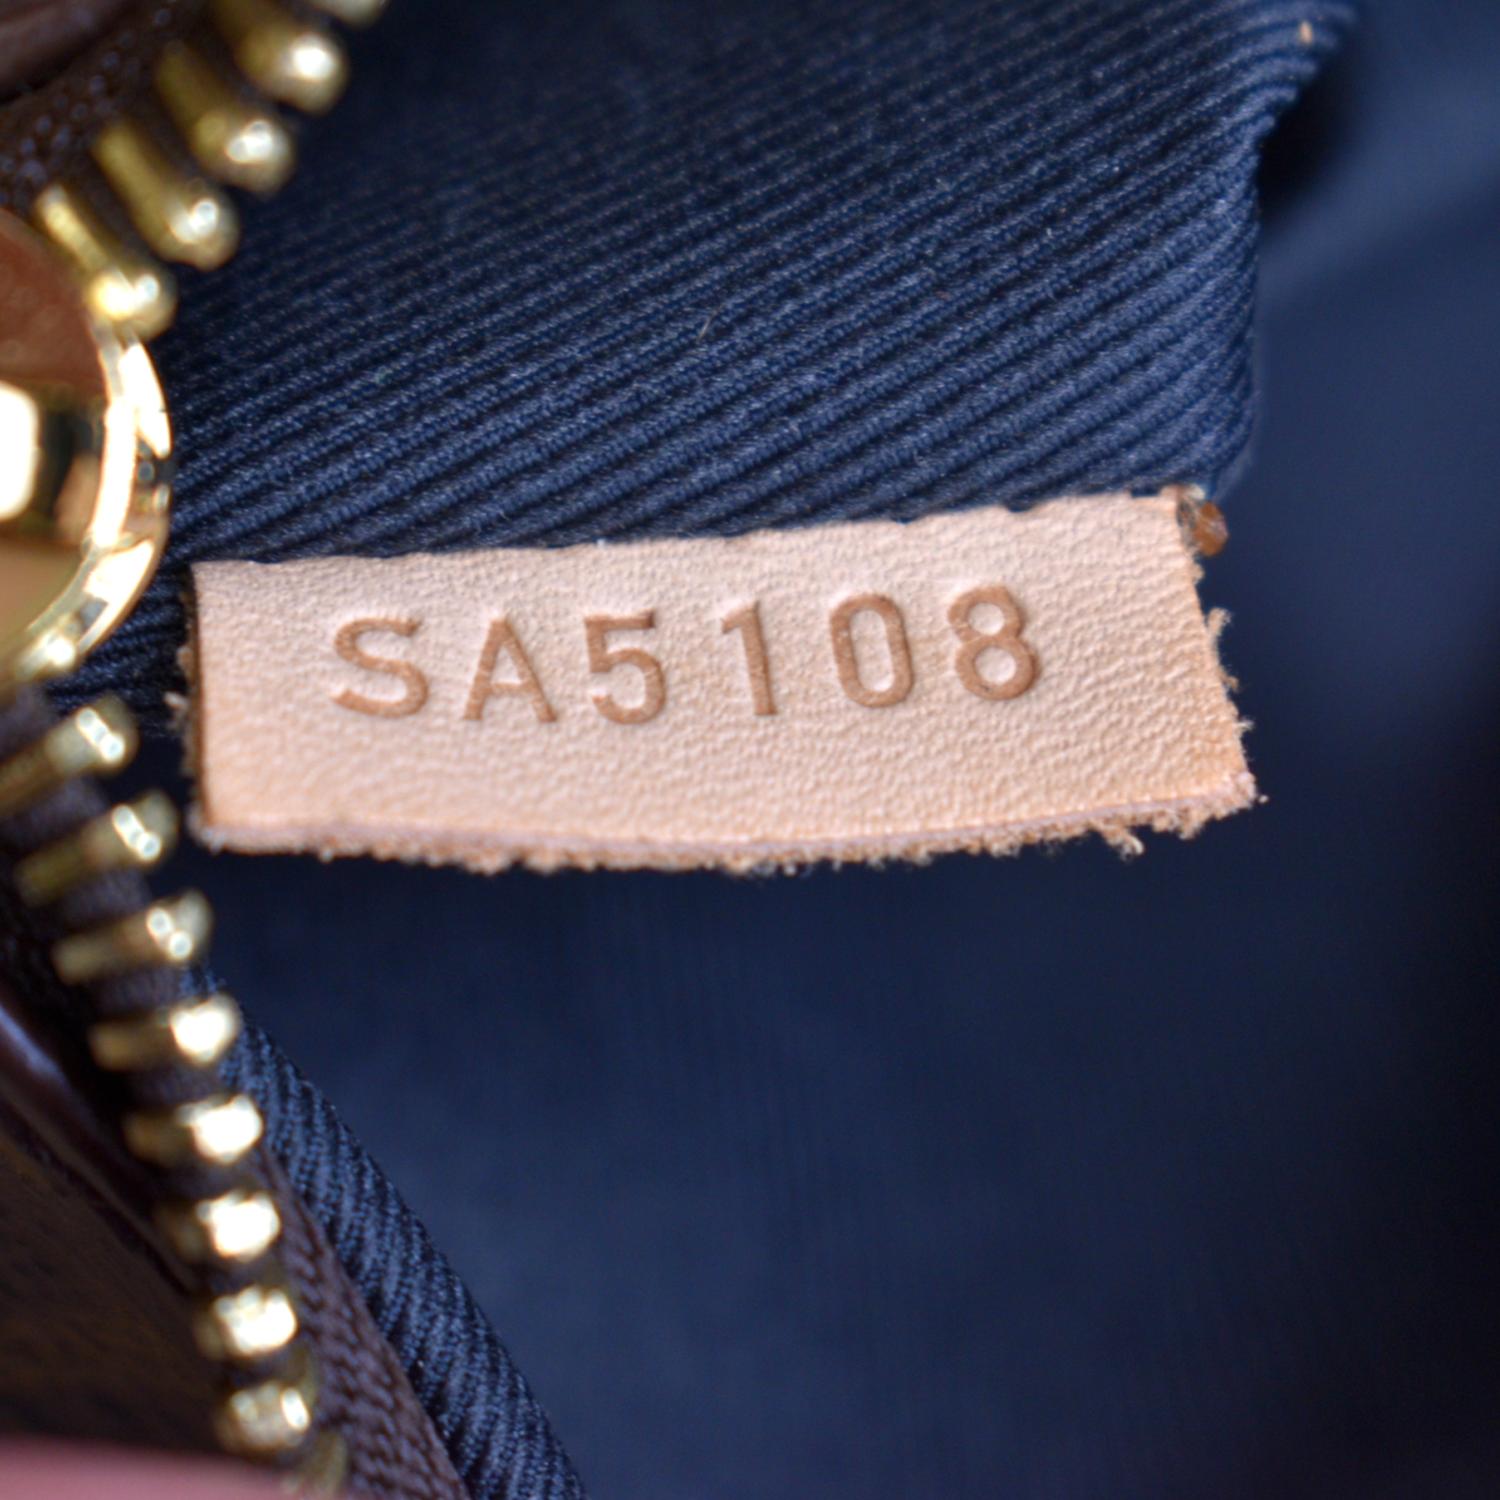 Date Code, Real Louis Vuitton Bumbag